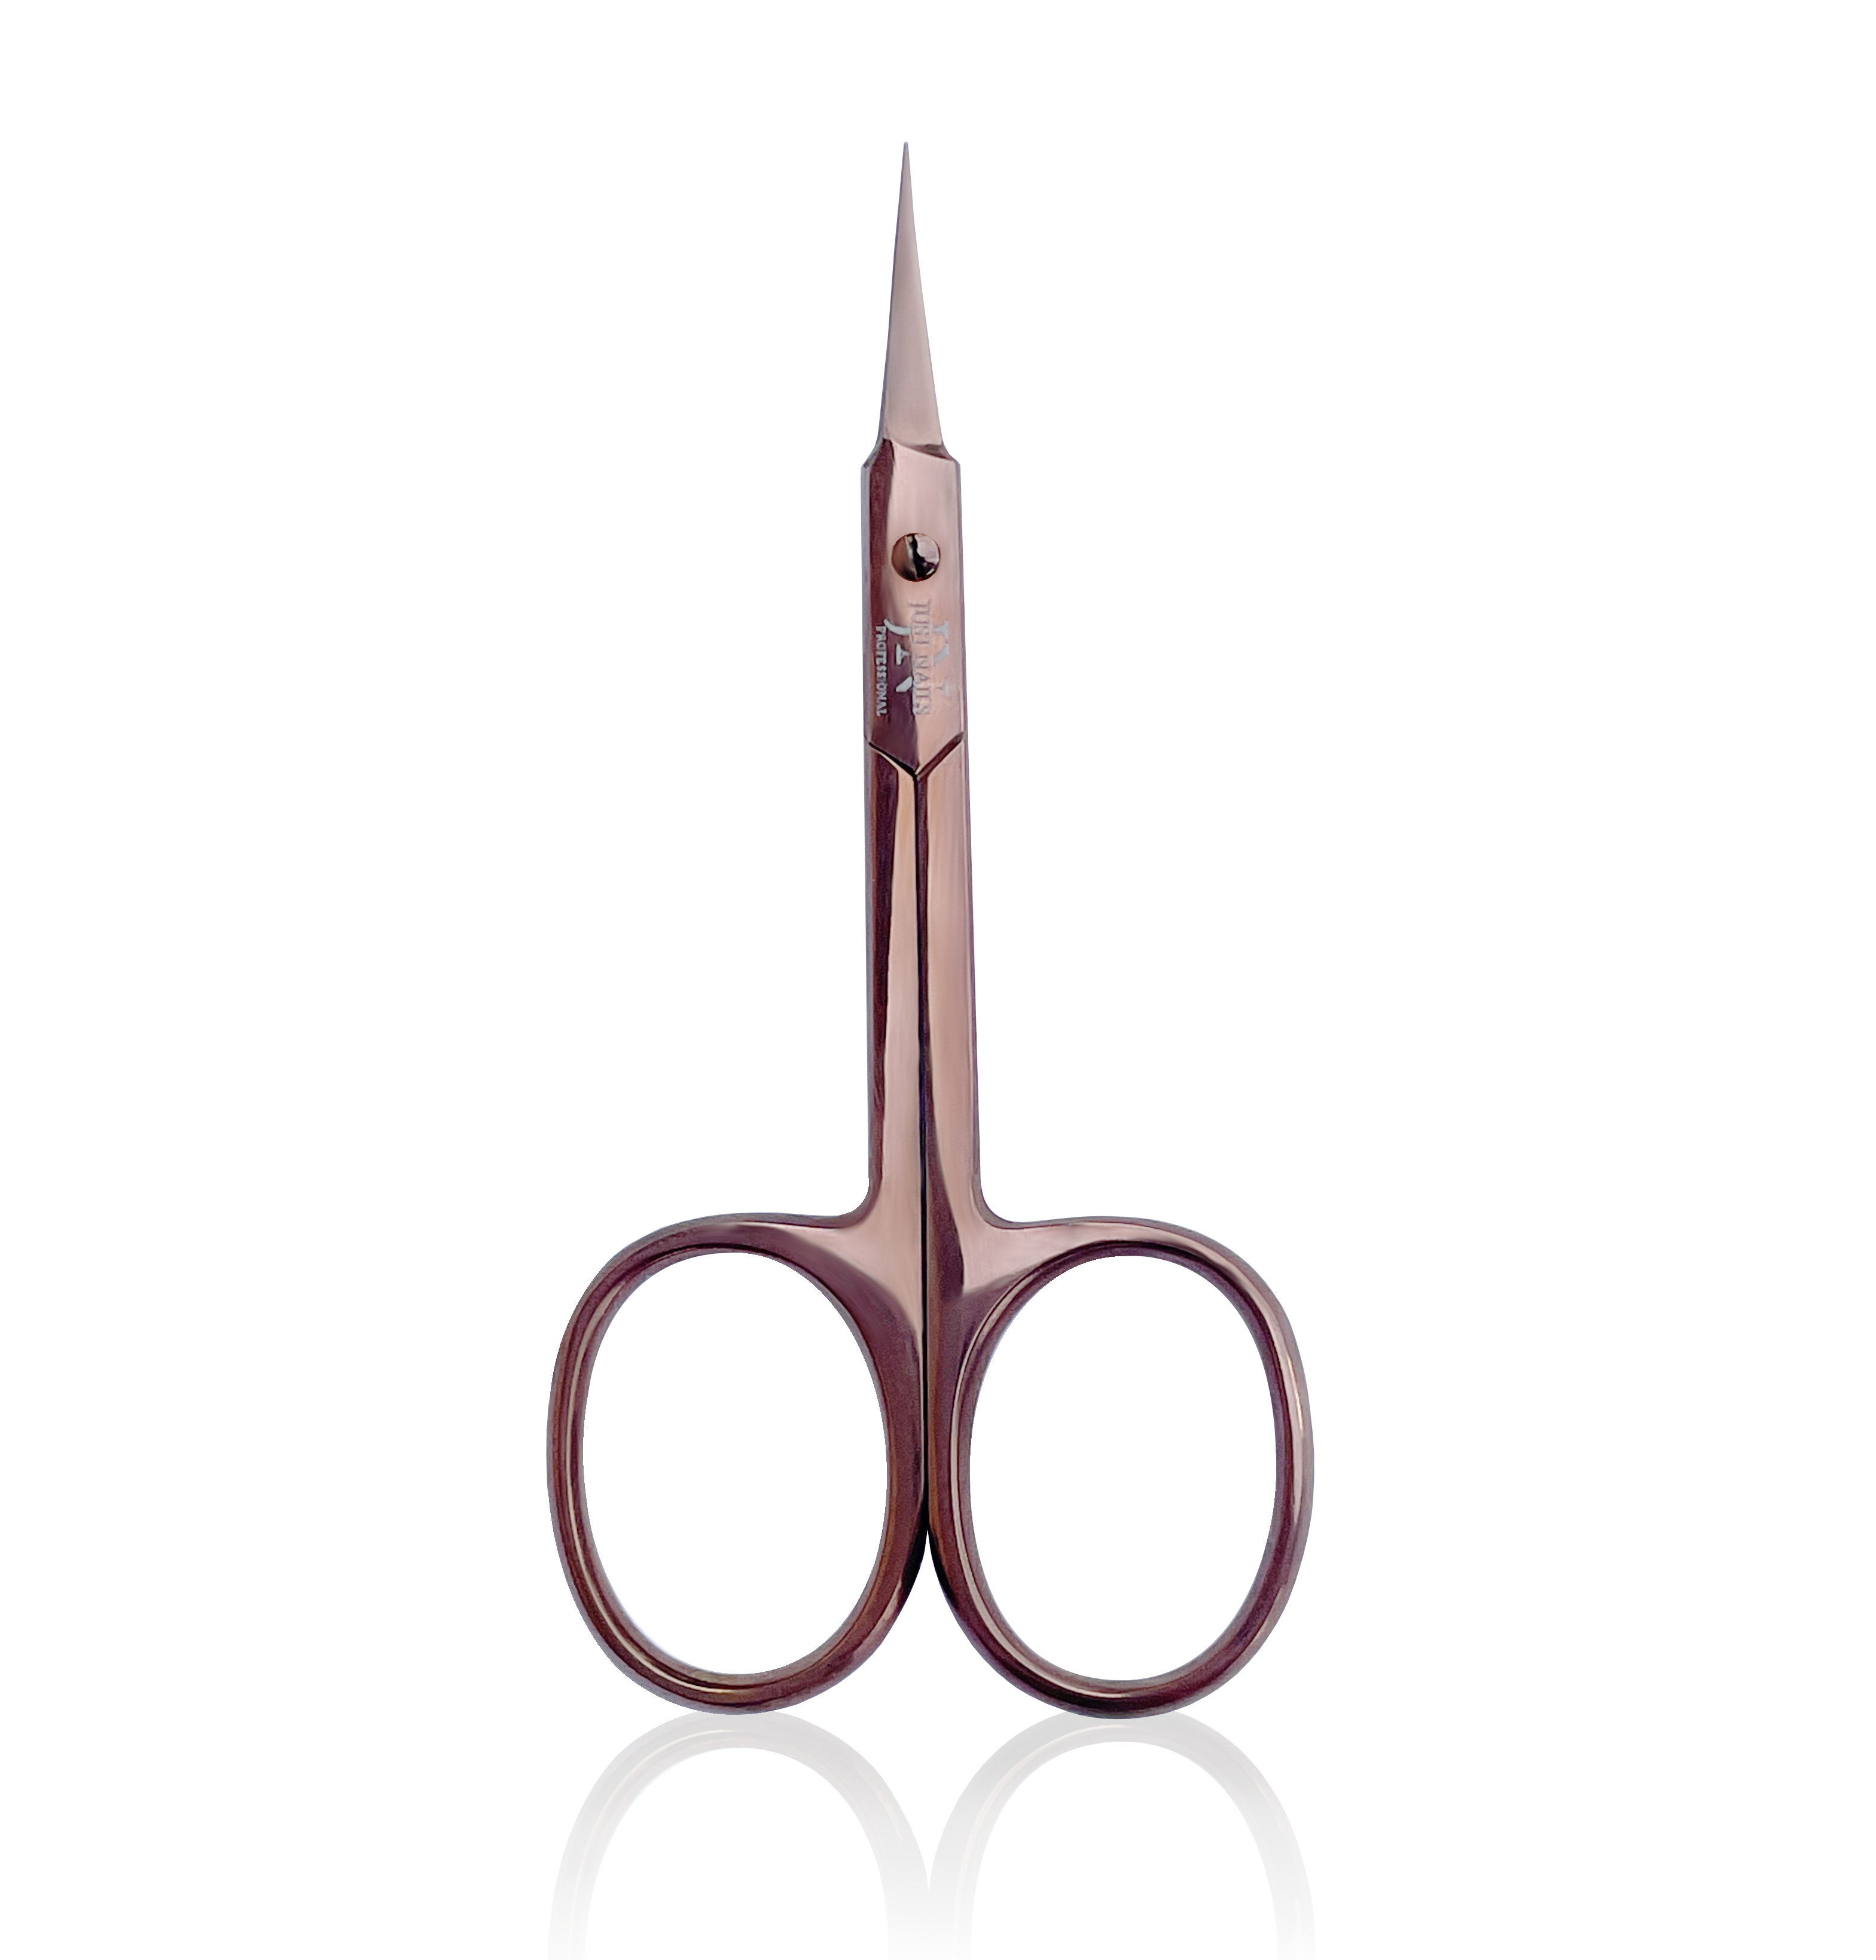 JUSTNAILS Premium Cutcle Scissors Bronze